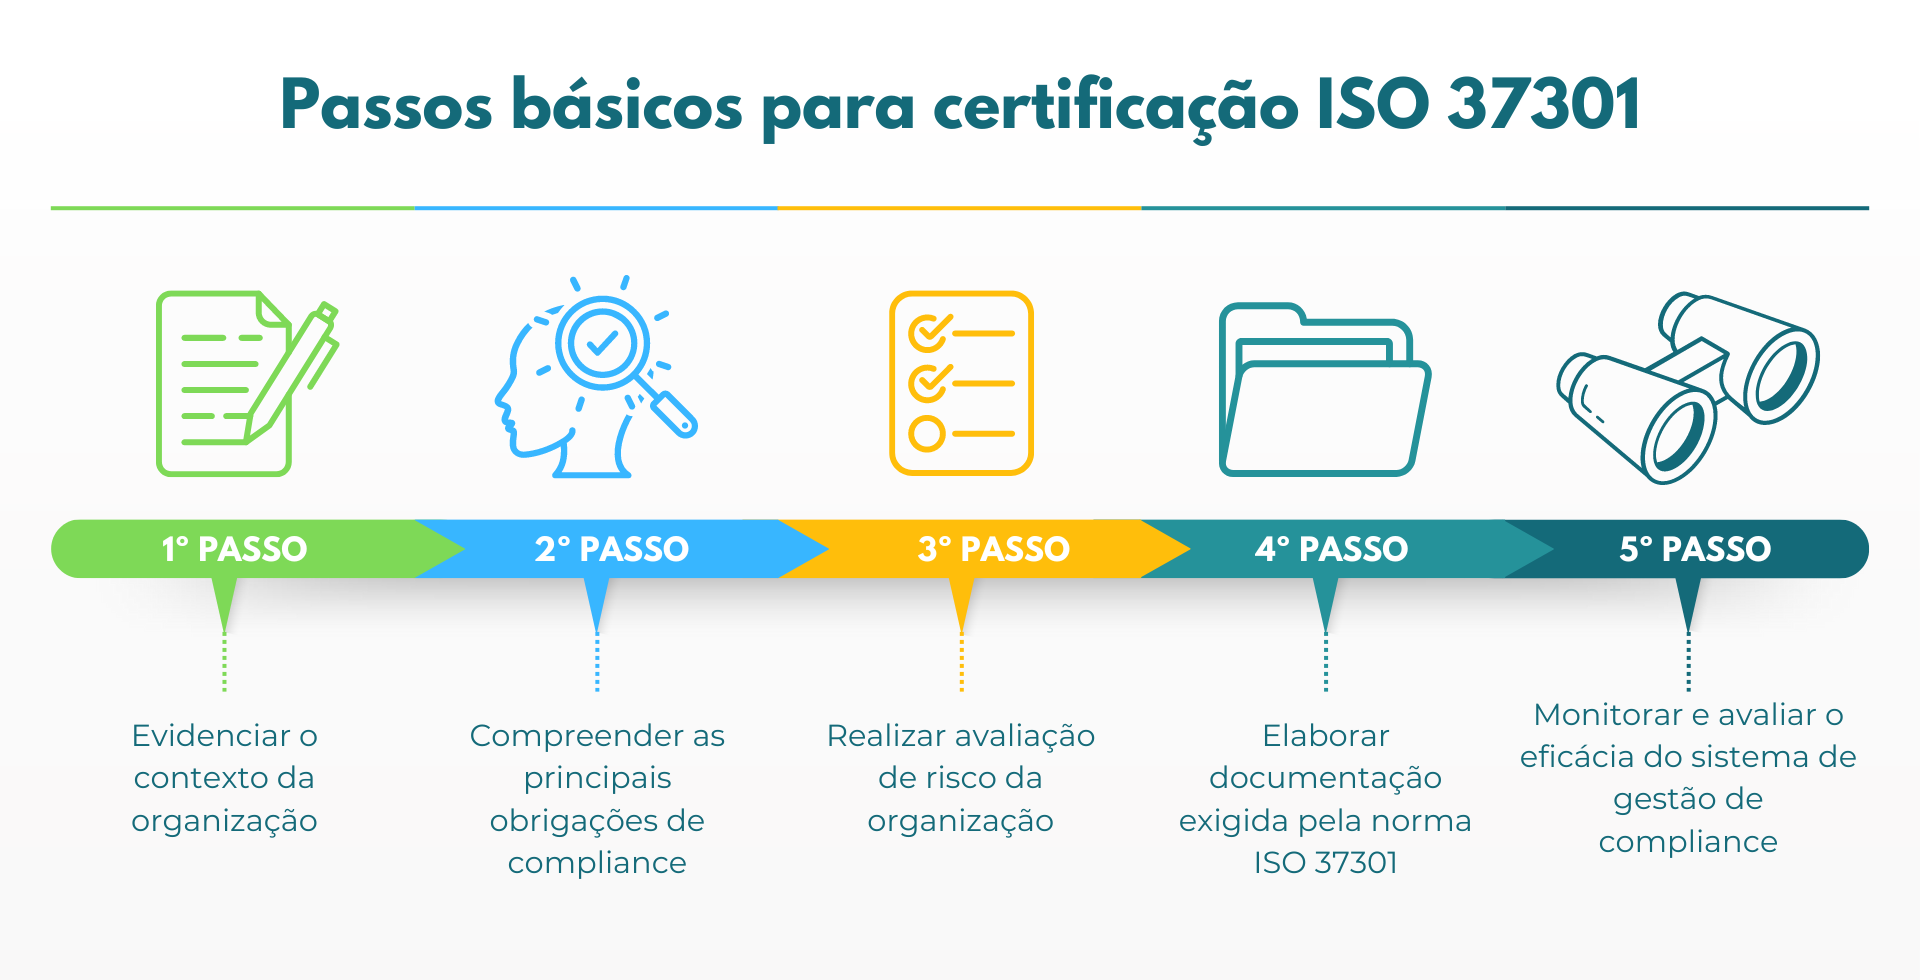 Obtenção da certificação ISO 37301 exige etapas essenciais